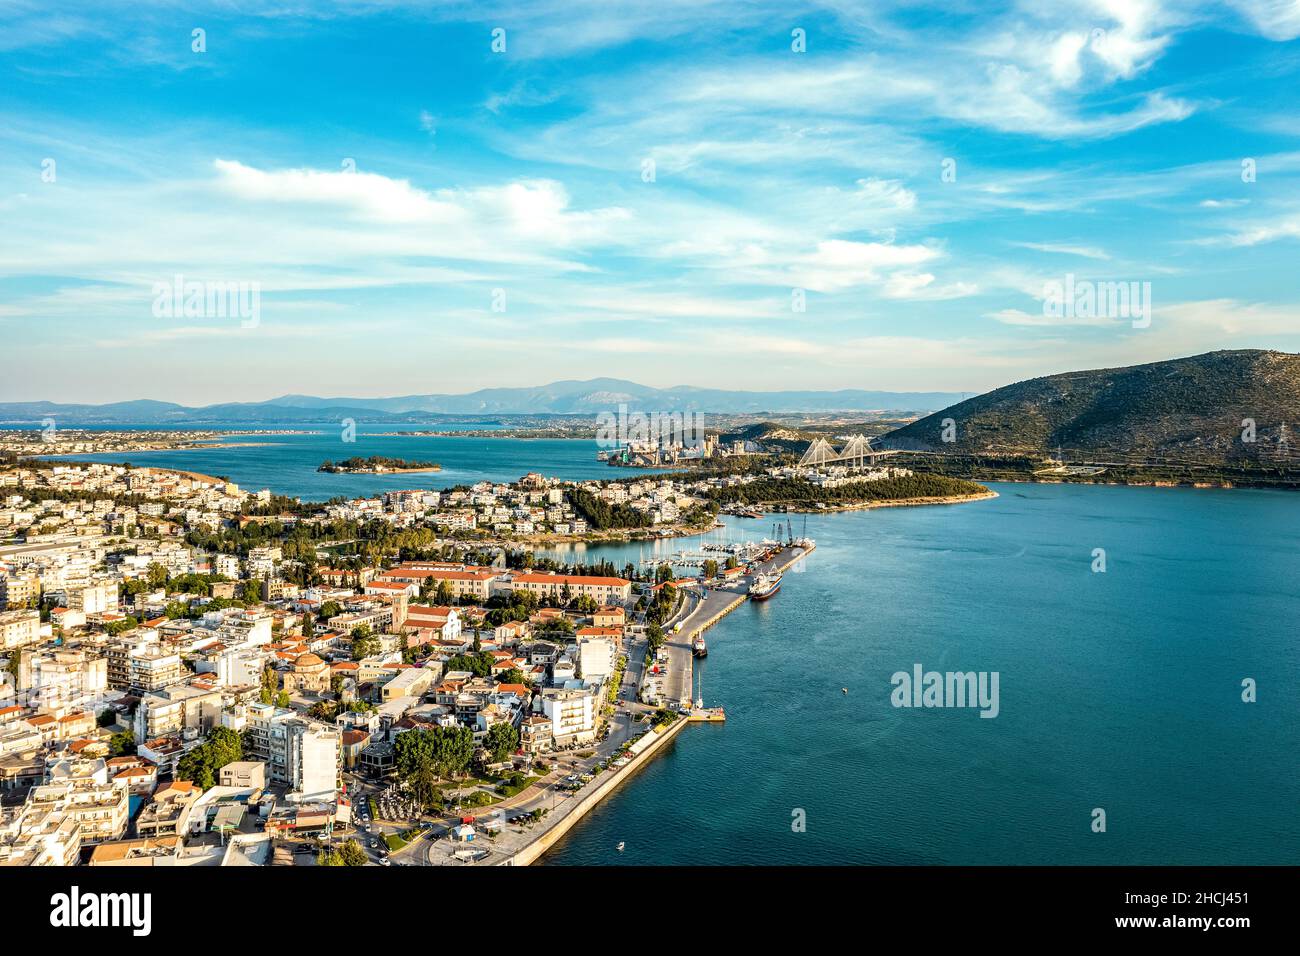 Panorama-Luftaufnahme der Stadt Chalkida in Zentral-Griechenland. Port und neue Hängebrücke im Hintergrund. Stockfoto